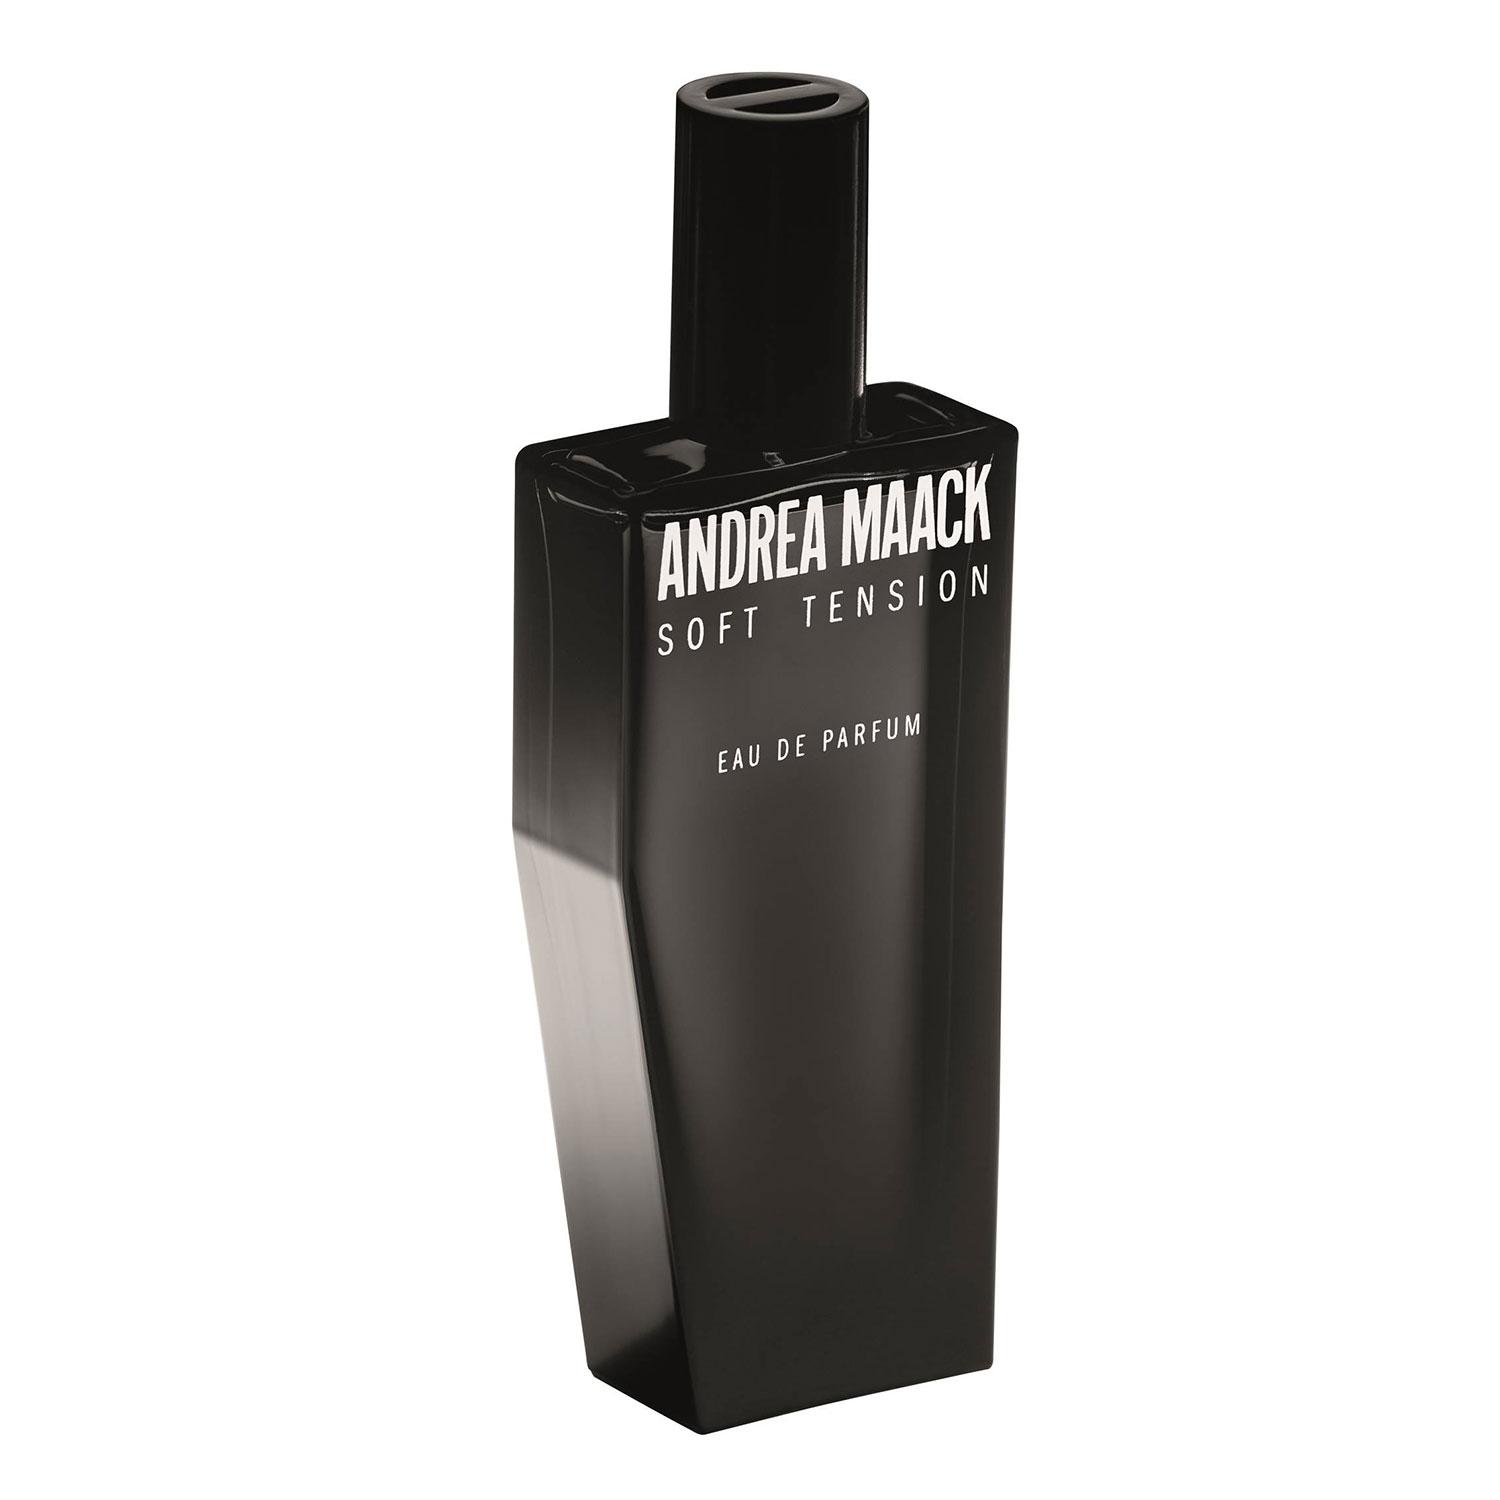 ANDREA MAACK - SOFT TENSION Eau de Parfum